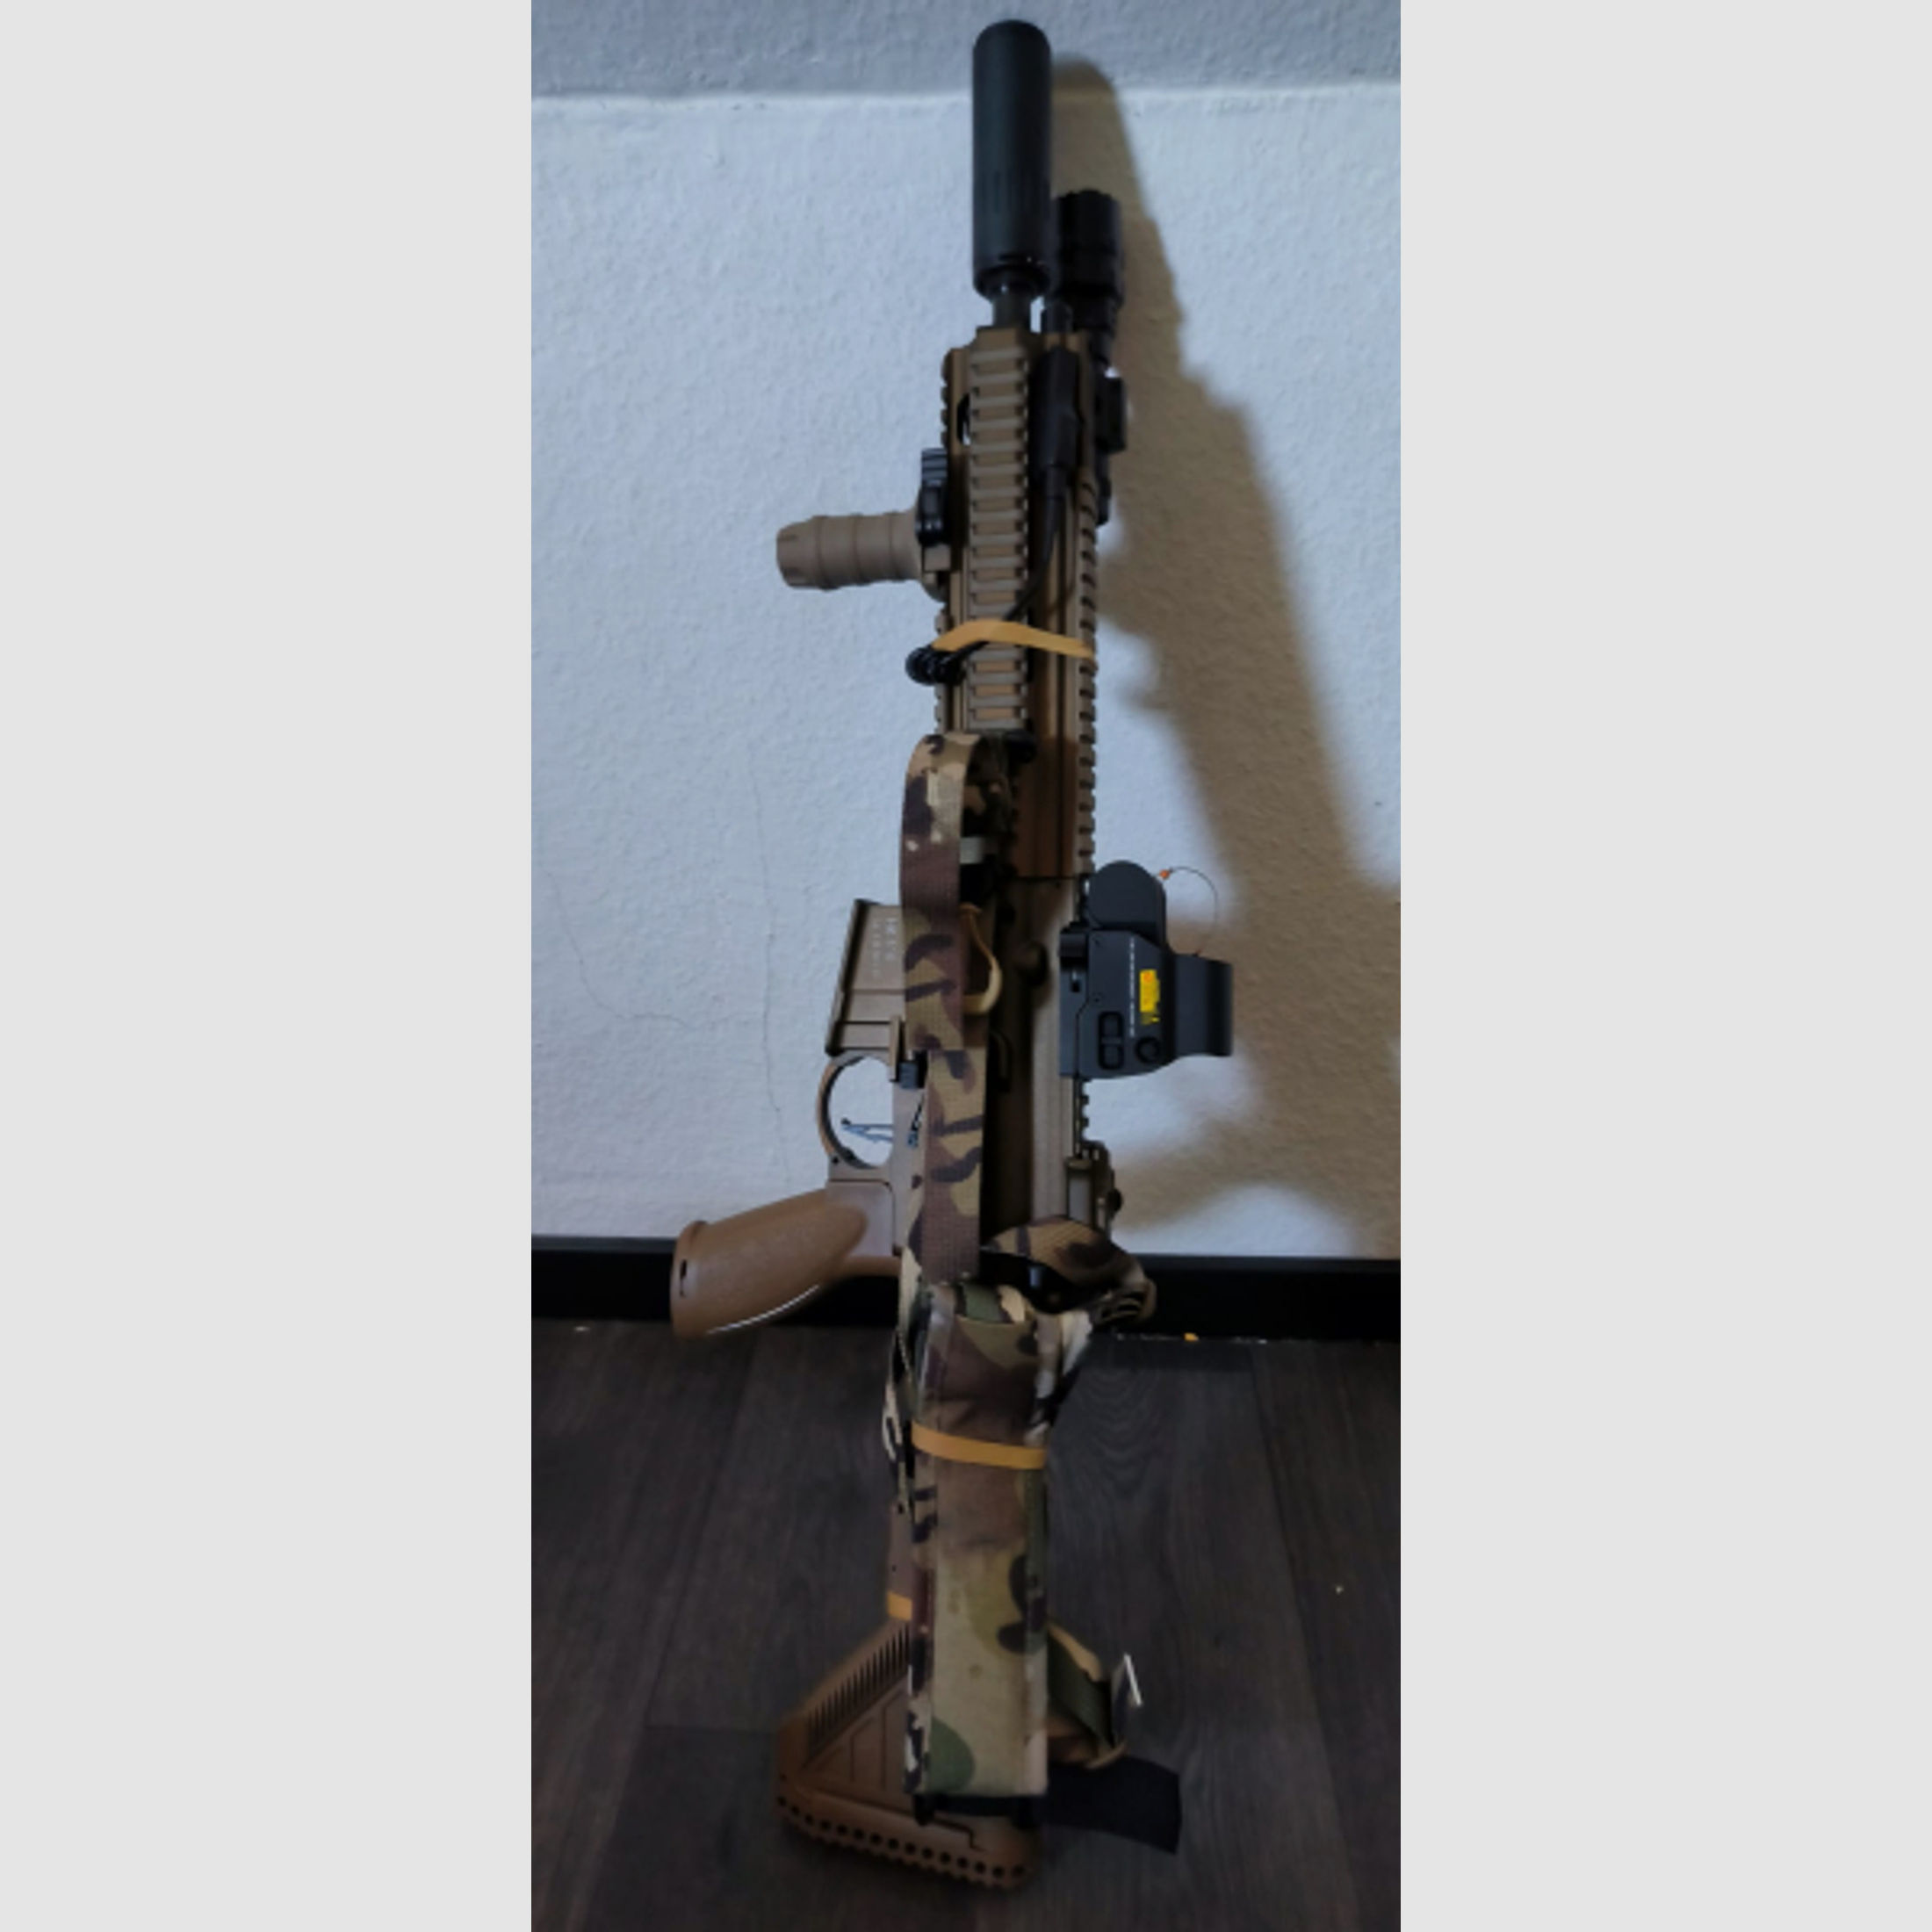 HK 416A5 GBB